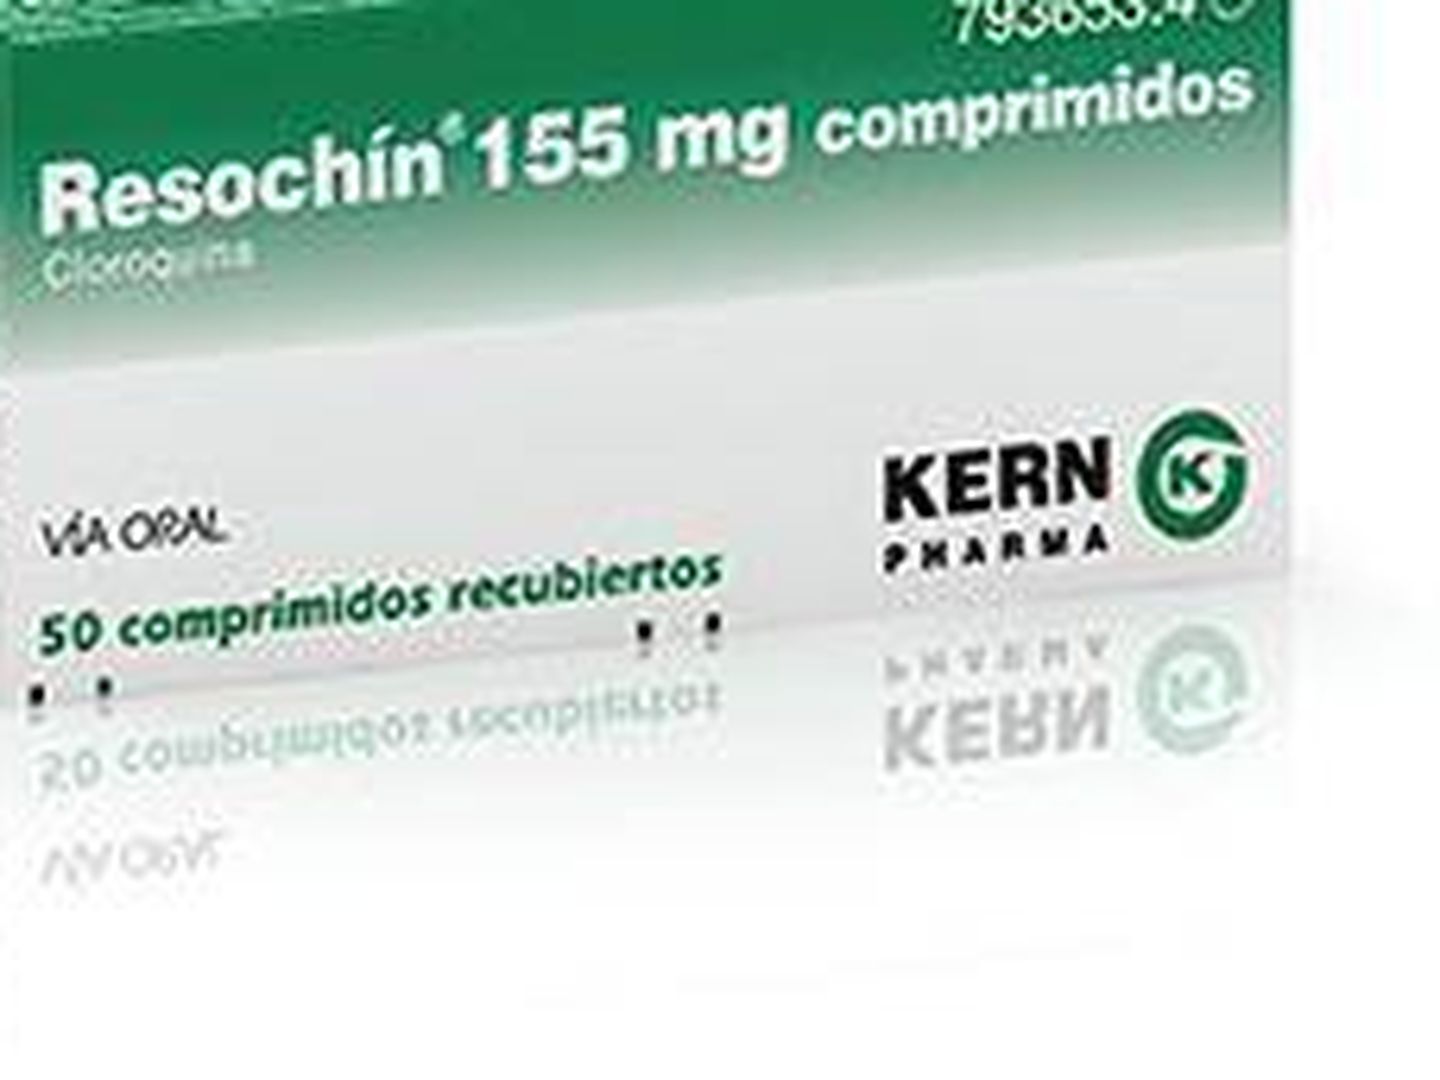 Resochin 155 mg, con cloroquina como principio activo, de Kern Pharma.  